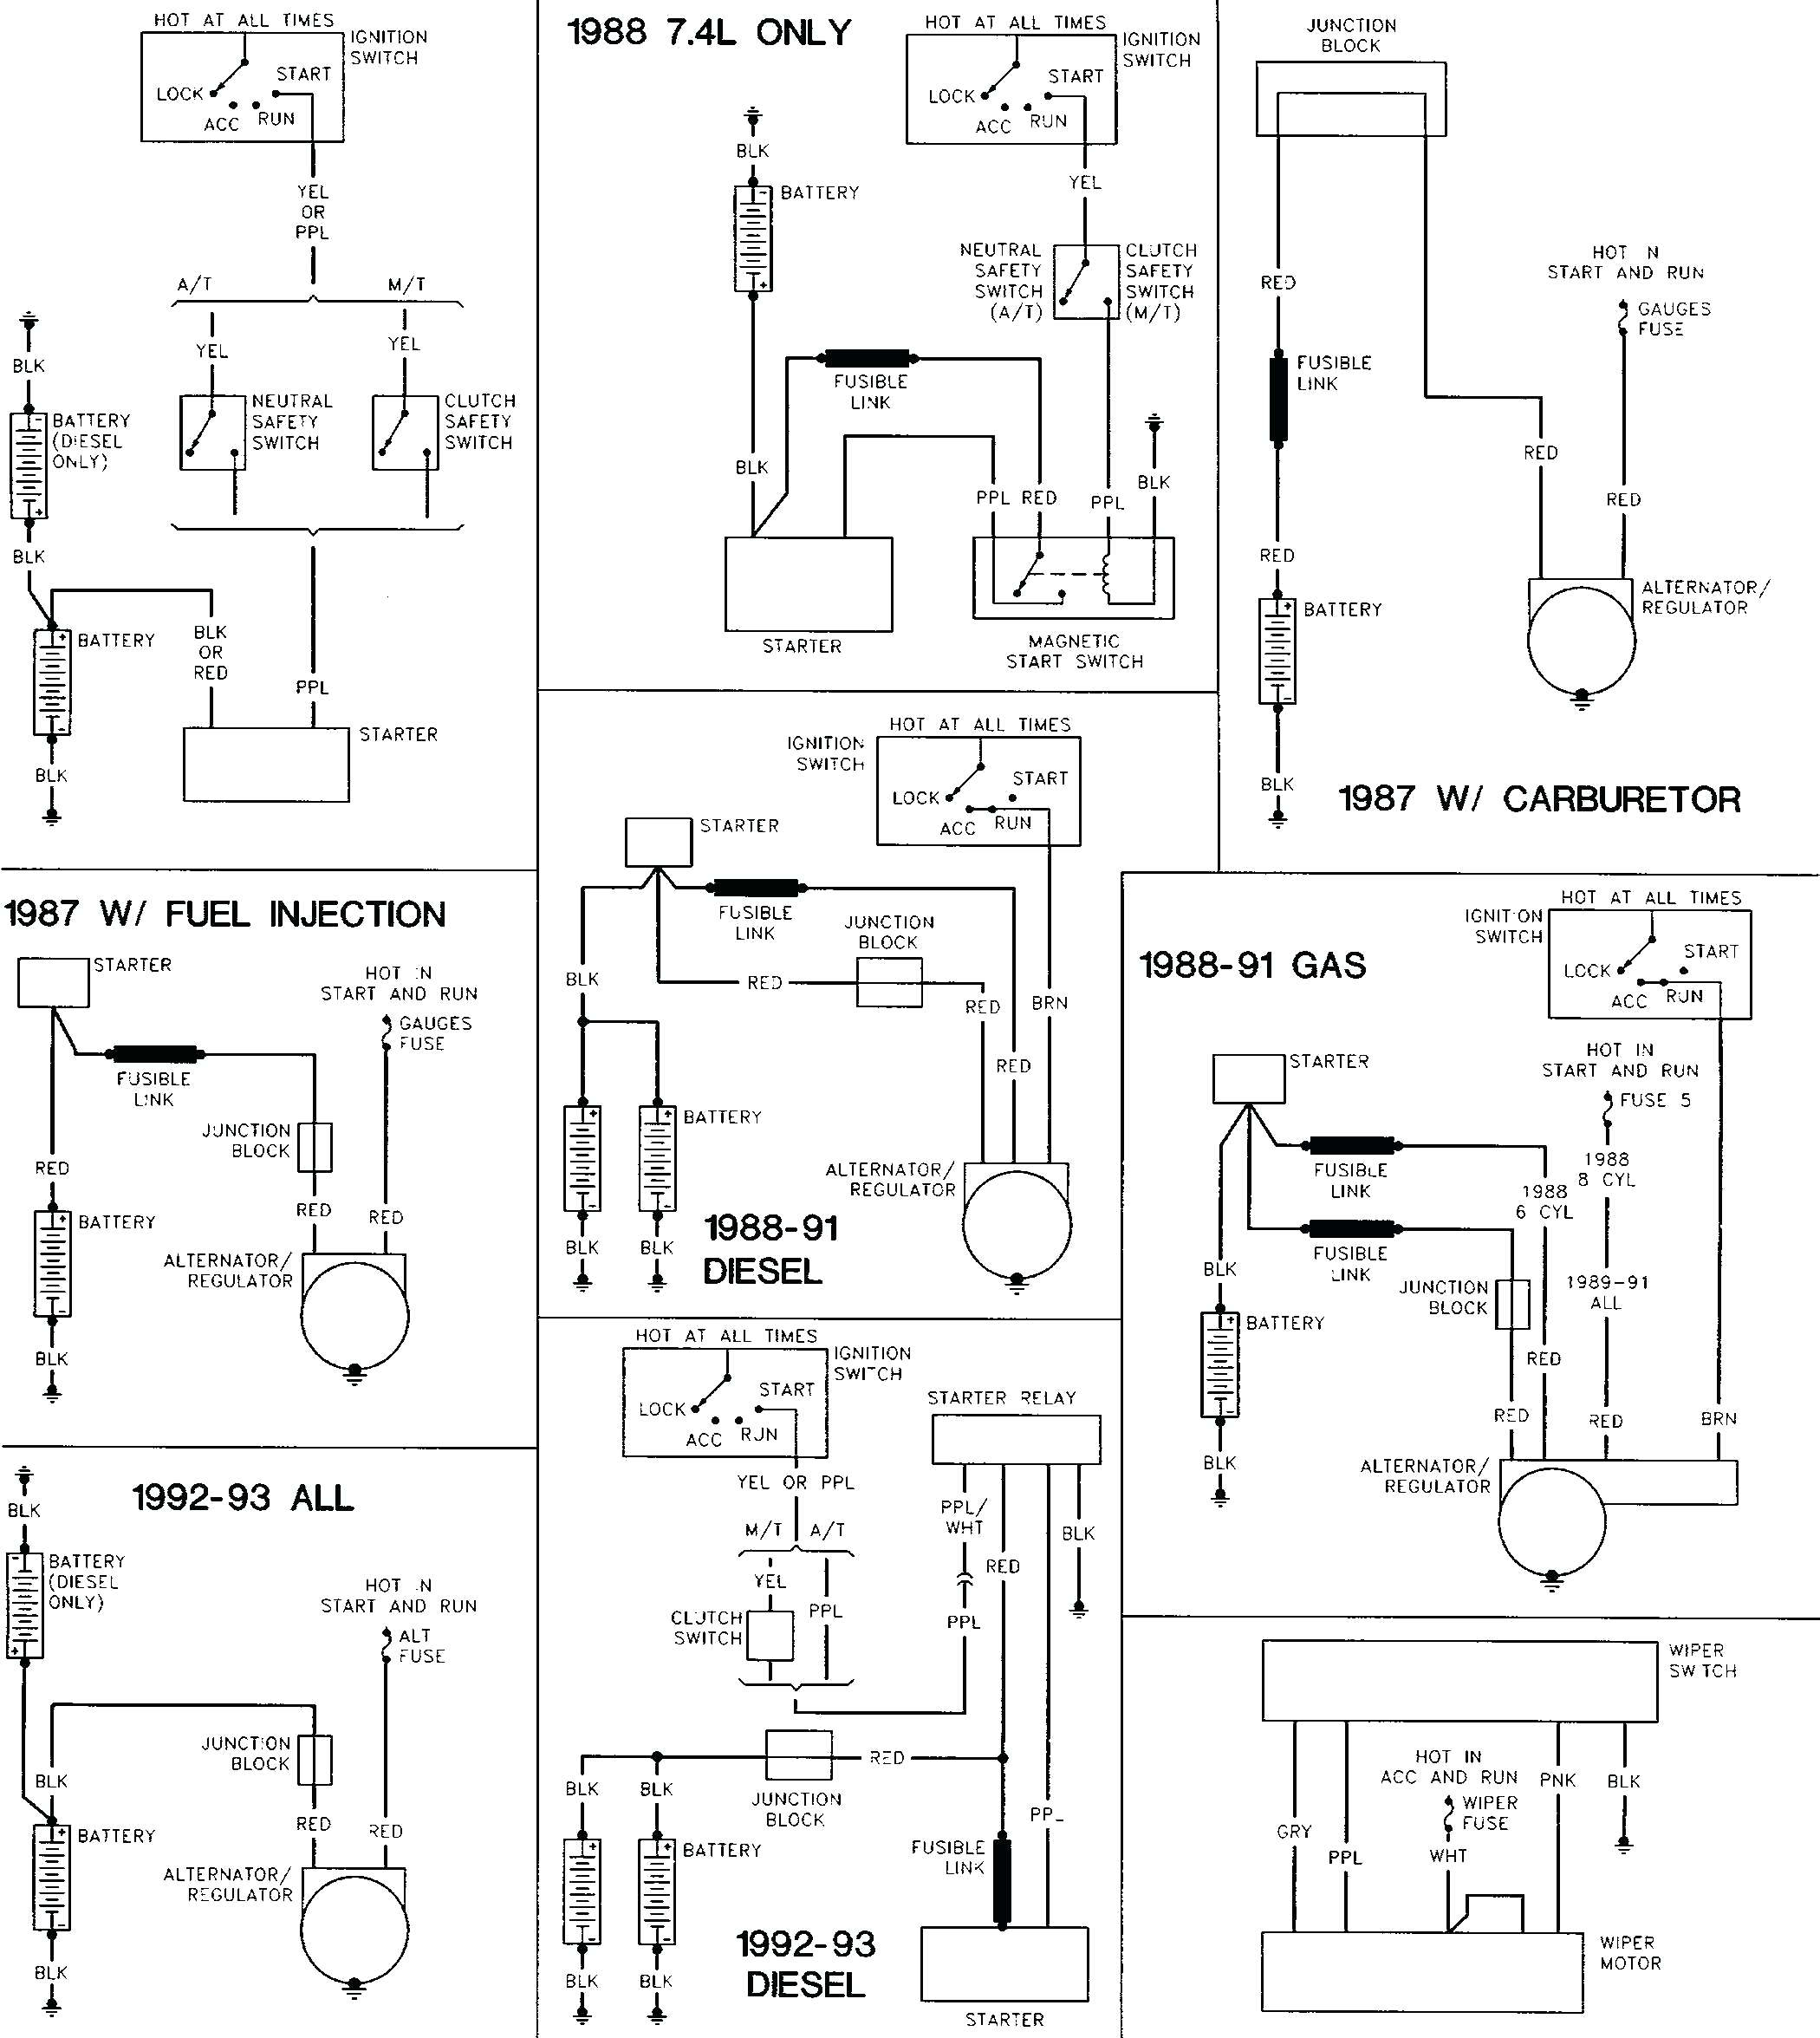 1983 Holiday Rambler Wiring Diagram | Wiring Diagram - Holiday Rambler Wiring Diagram